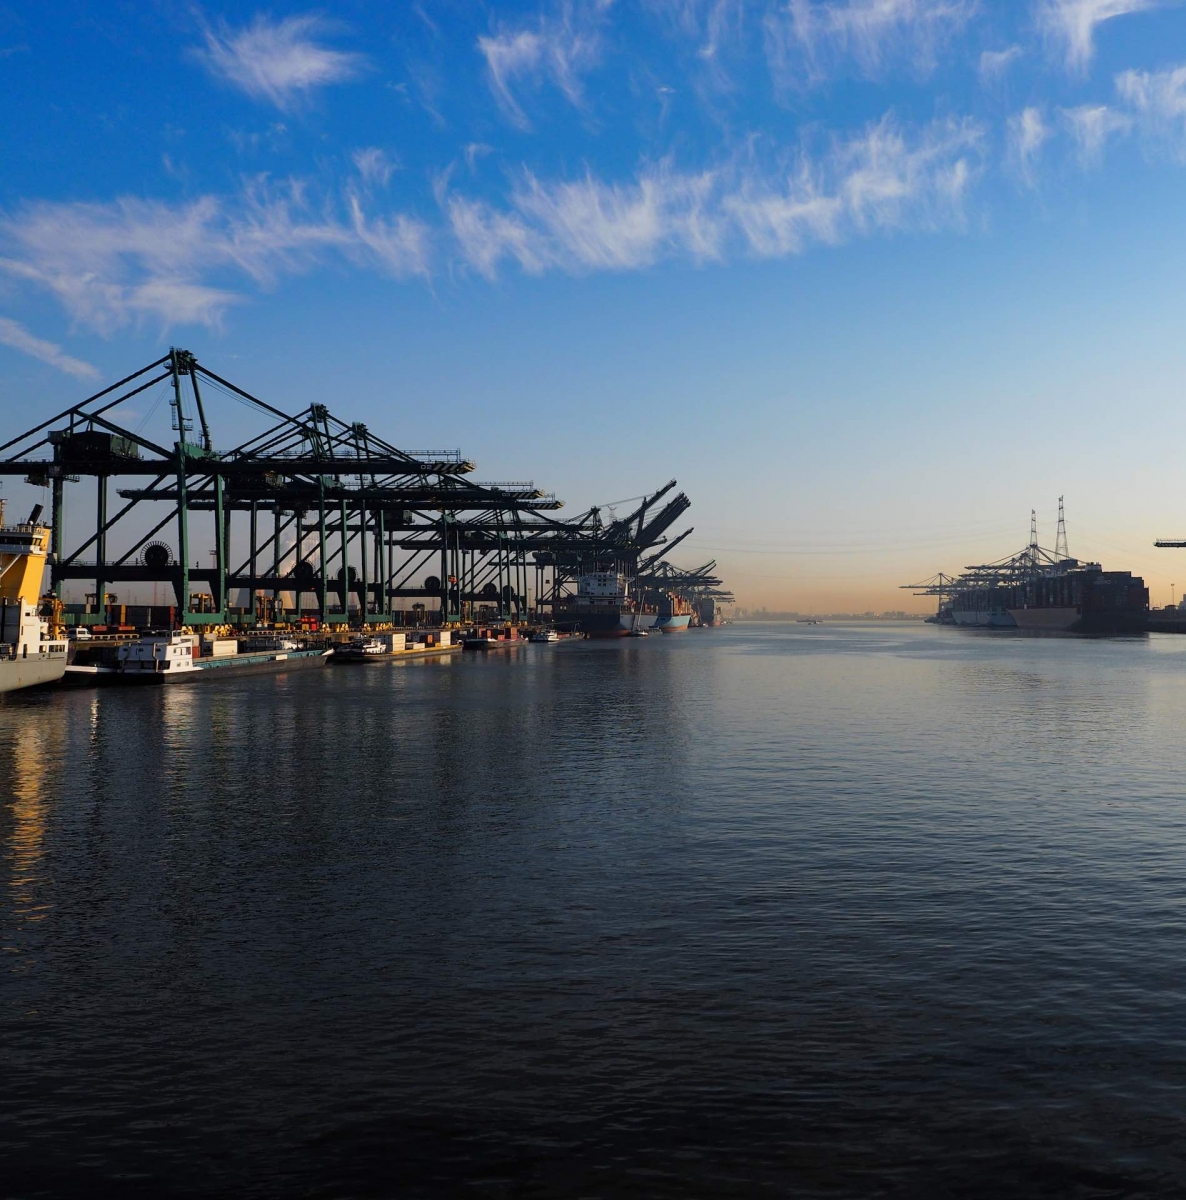 Hafenkräne entladen an einem sonnigen Morgen im Hafen von Antwerpen Container von Schiffen.